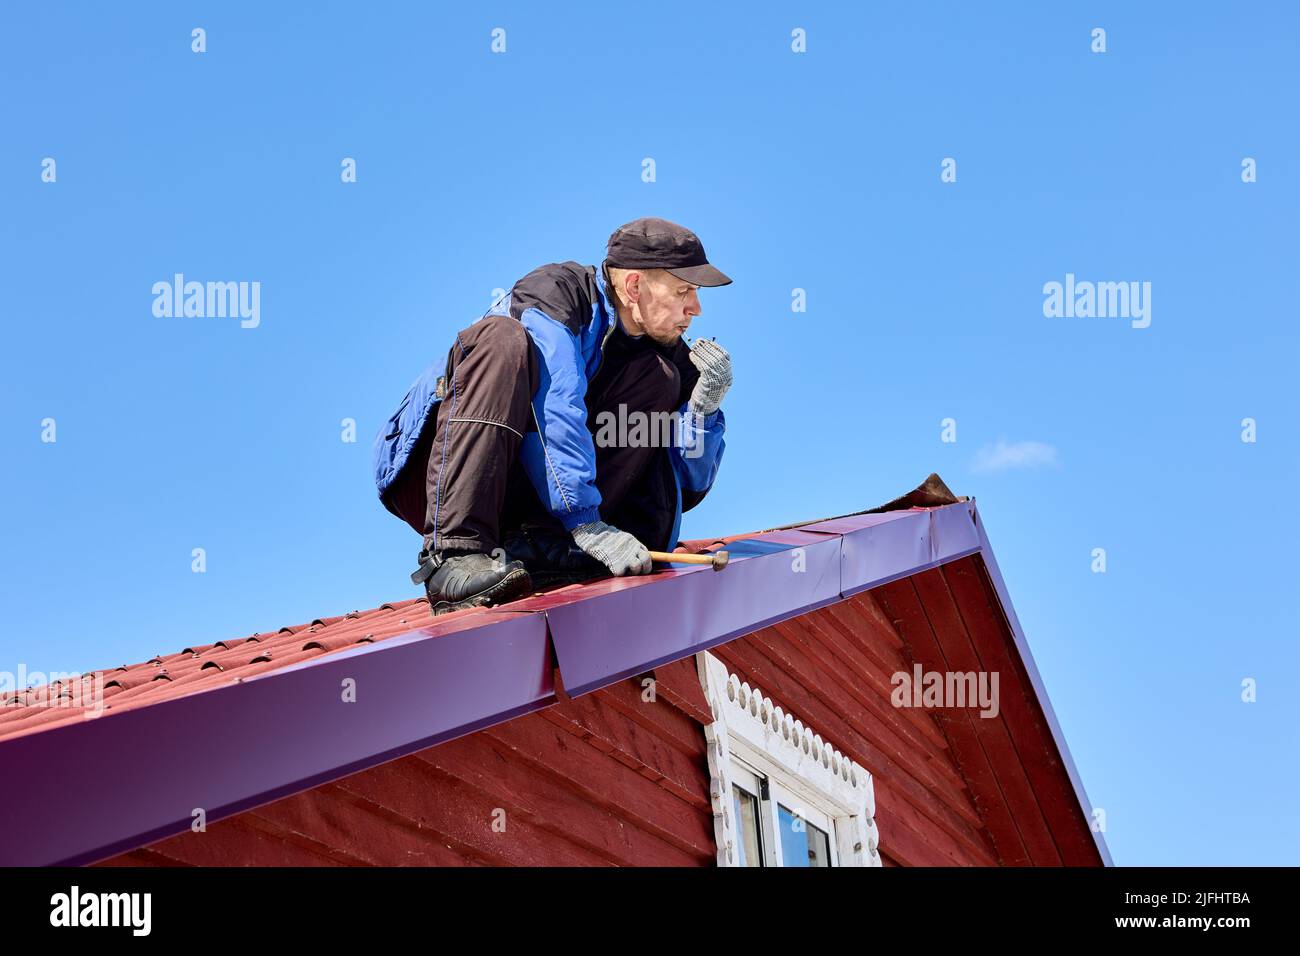 Während des Dachs nageln Arbeiter mit Hammer in das Zinndach ein, um das Dach zu befestigen. Stockfoto